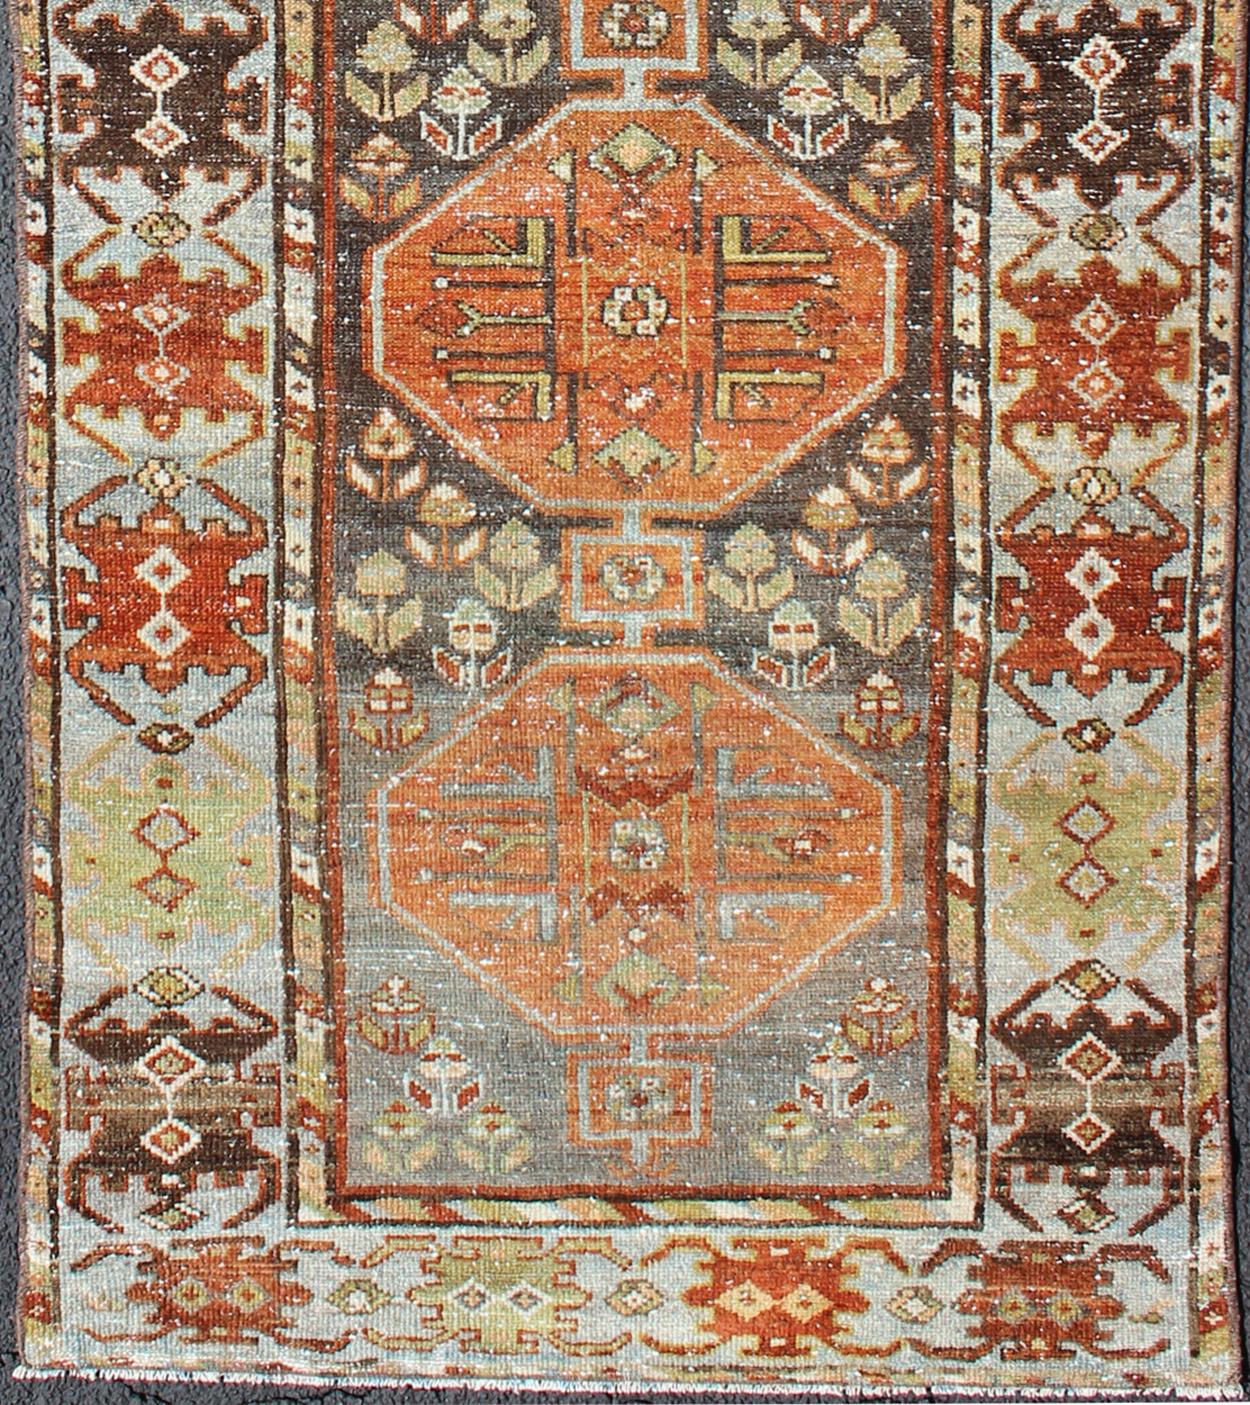 Tapis antique Bakhtiari de Perse avec cinq médaillons géométriques en bleu clair, olive, orange, brun et rouge, tapis ema-7525, pays d'origine / type : Iran / Bakhtiari, circa 1910s.

Cet ancien tapis persan Bakhtiari du début du XXe siècle en Iran